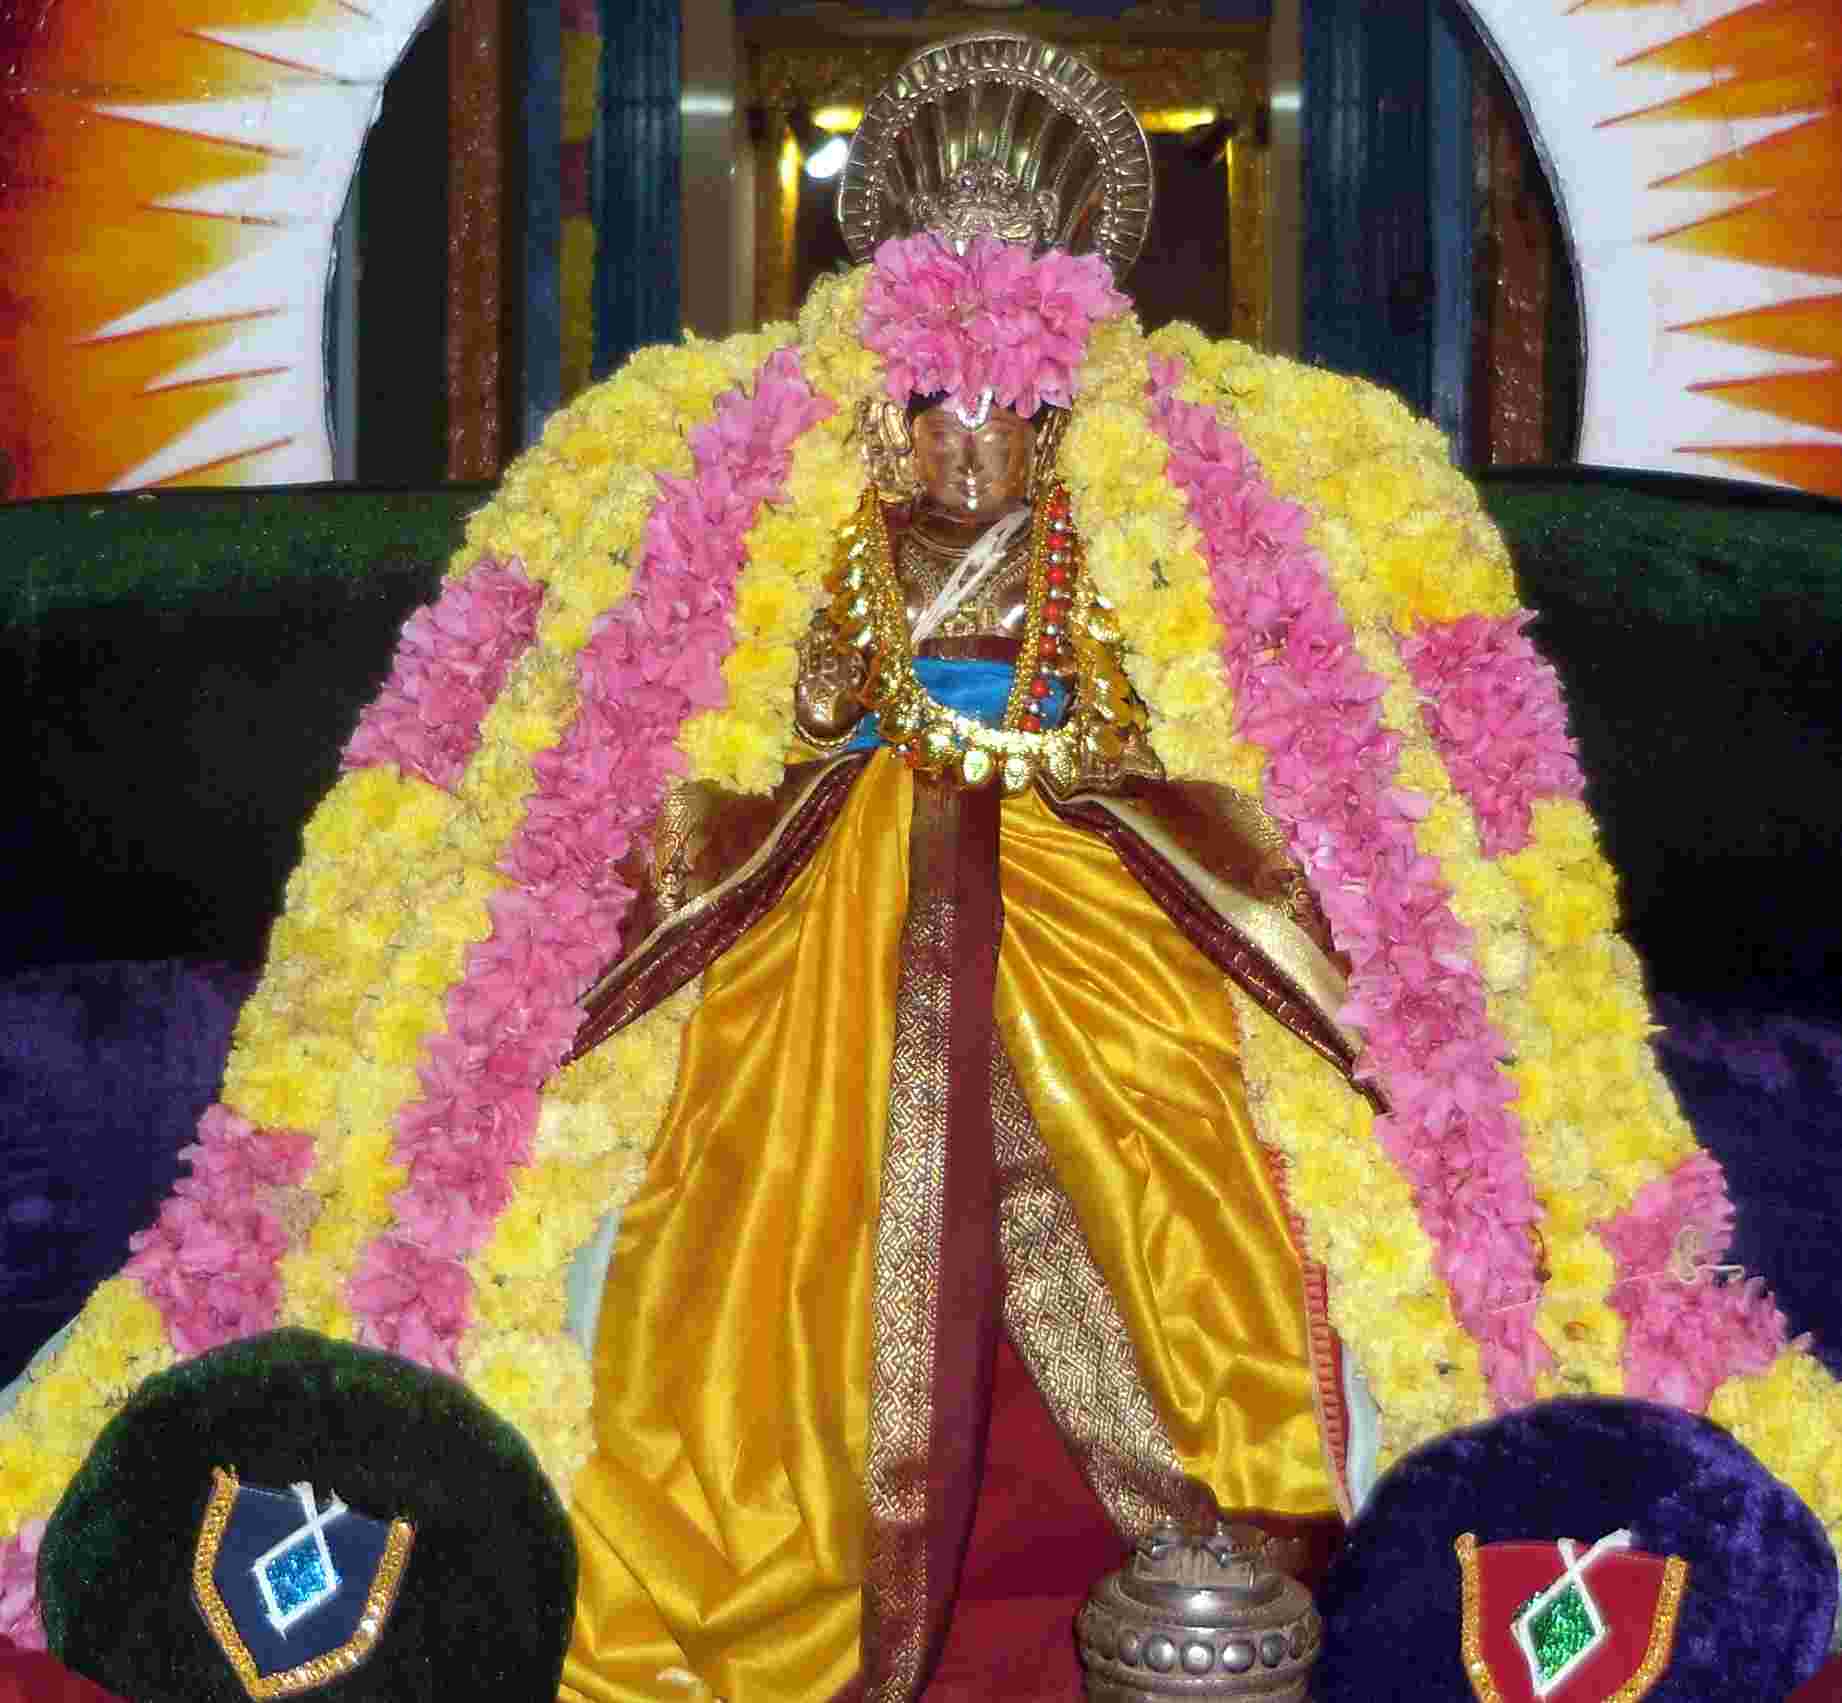 Thirukannamangai Swami Desikan 747 Thirunakshatra Utsavam day 2  2014 02